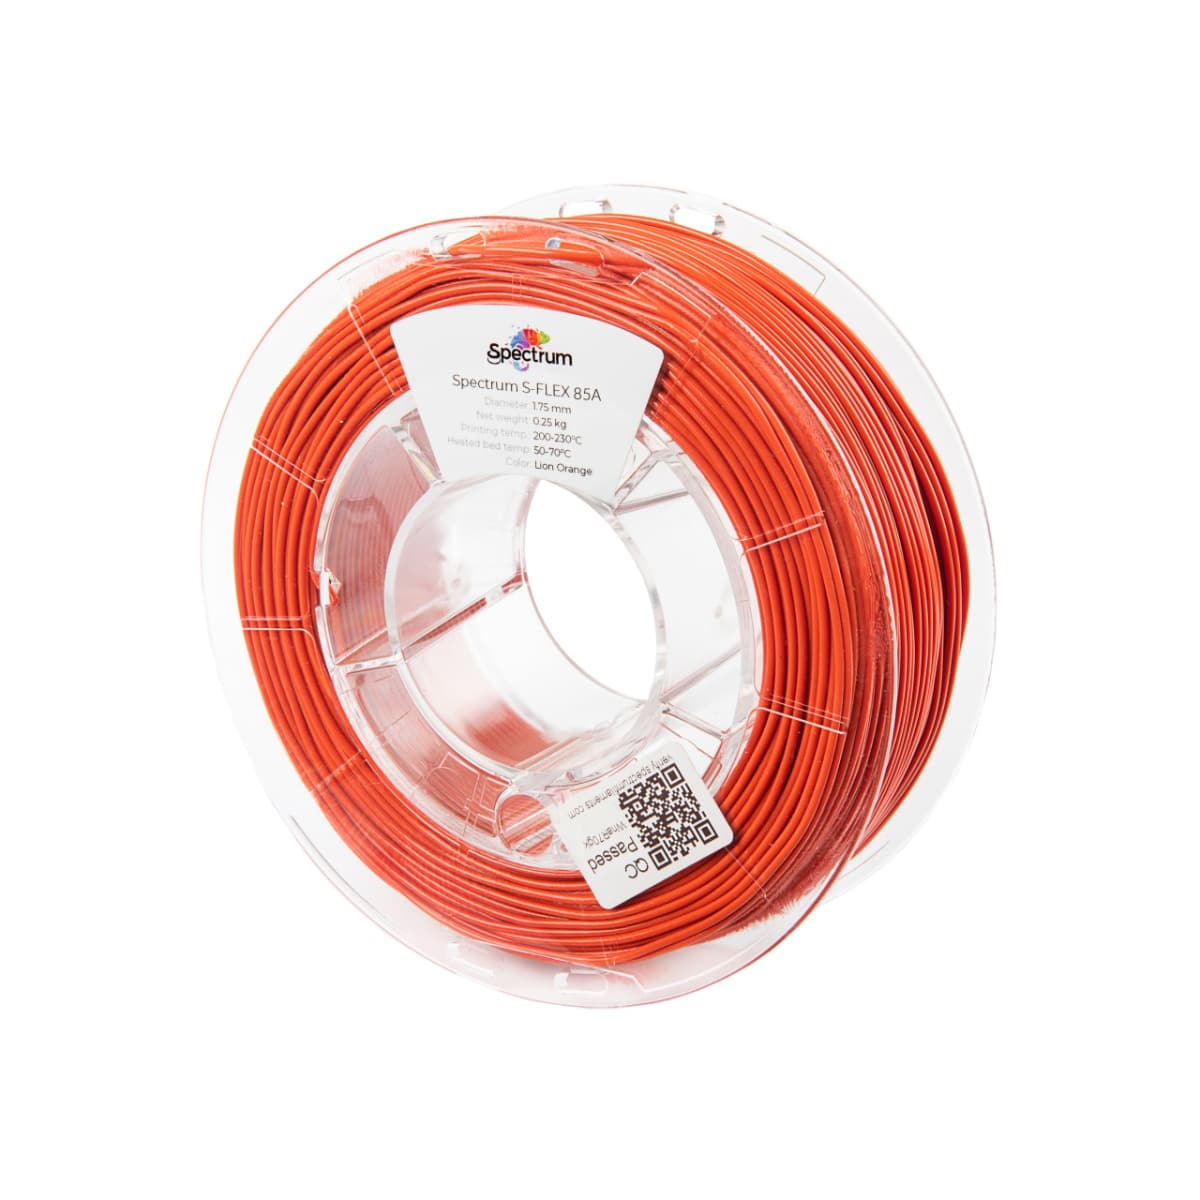 Køb Spectrum Filaments - S-Flex 85A - 1.75mm - Lion Orange - 0.25kg - Pris 130.00 kr.